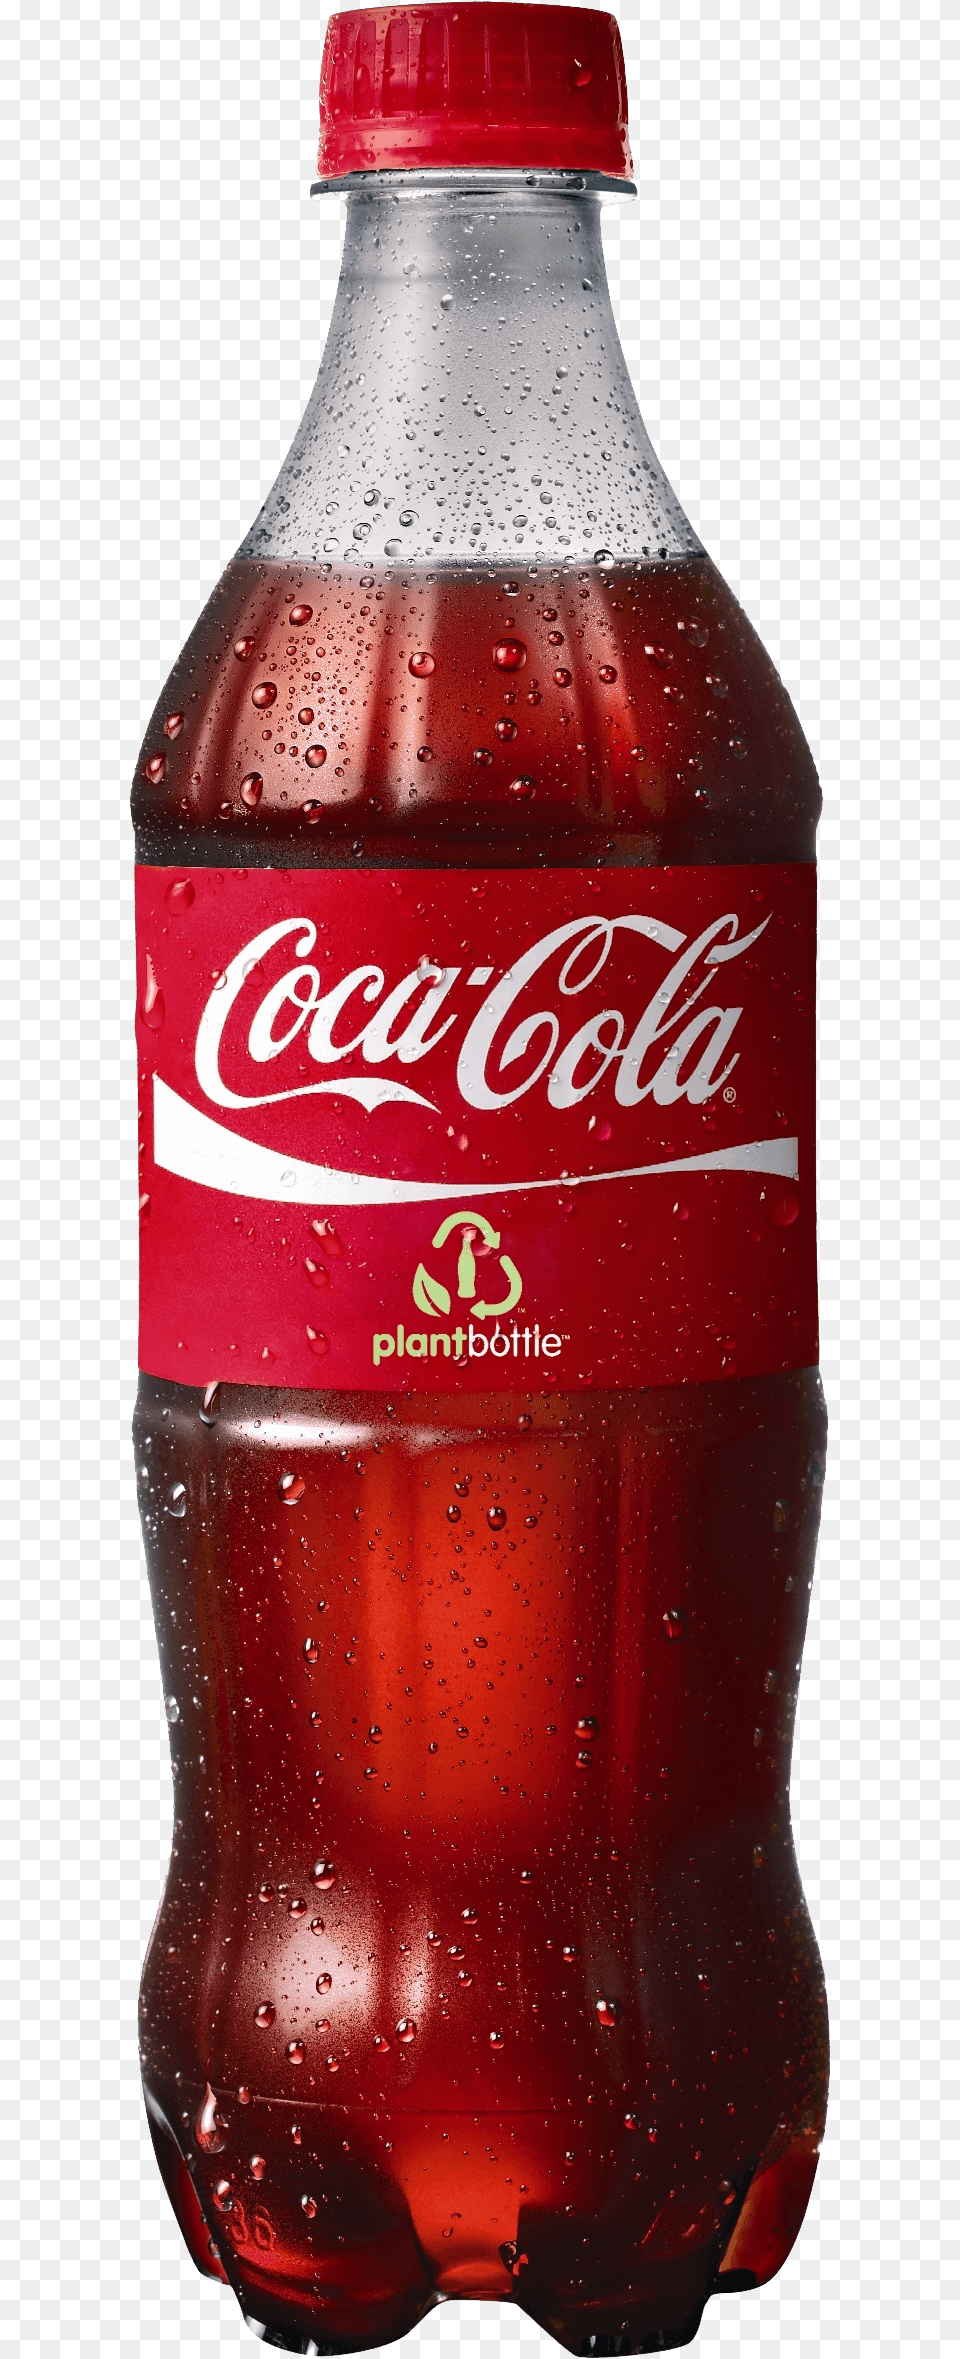 Cocacola Download Coca Cola, Beverage, Coke, Soda, Food Free Png